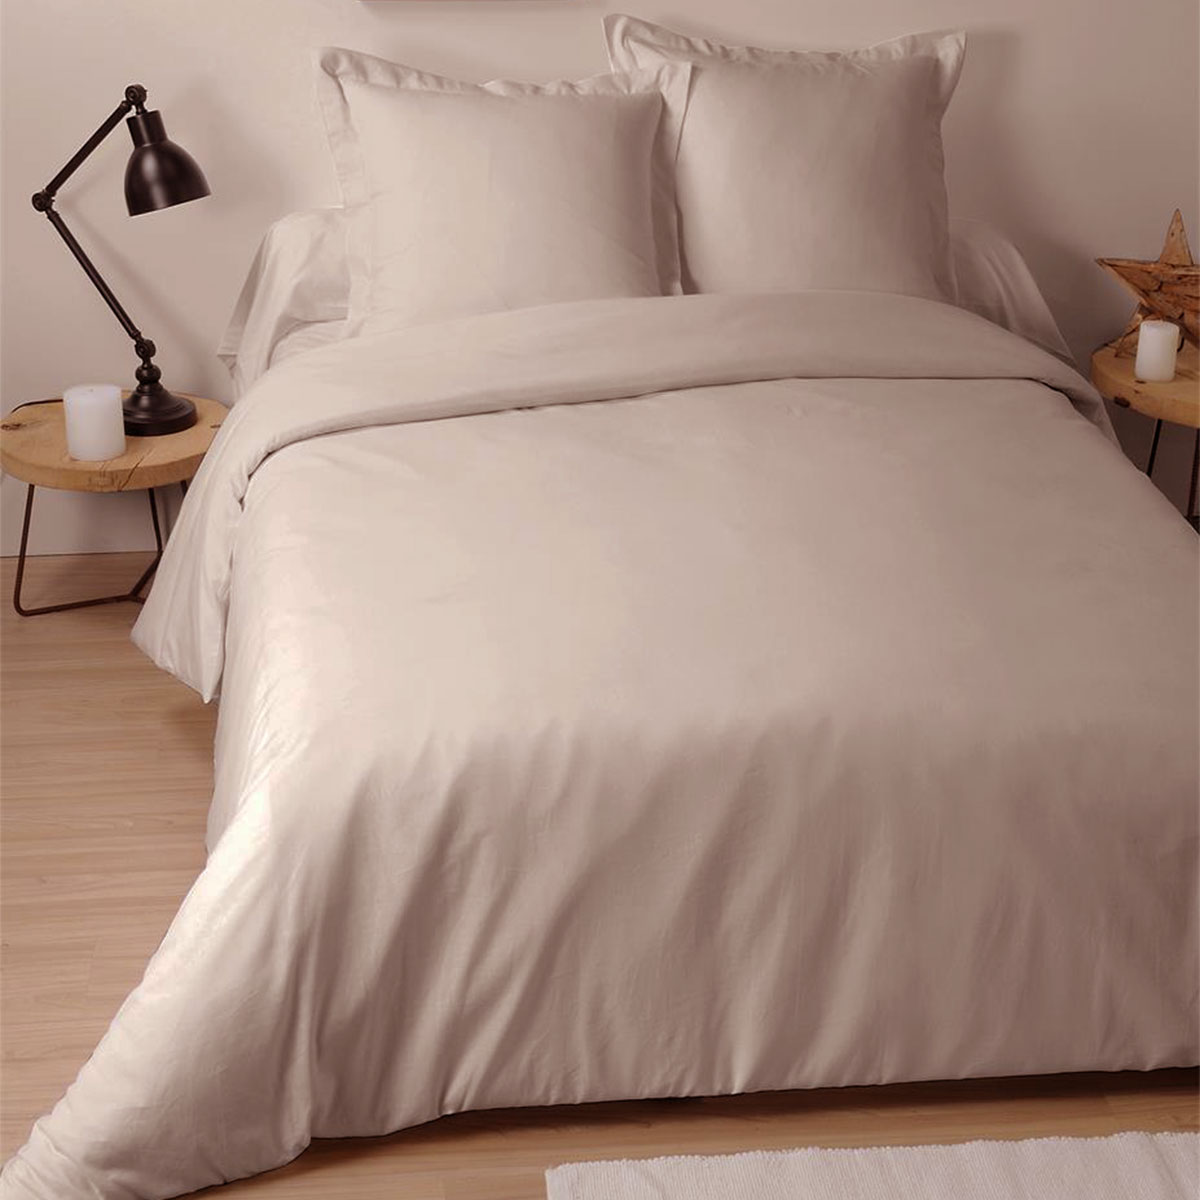 Pillow case 65 x 65 cm - Lin color